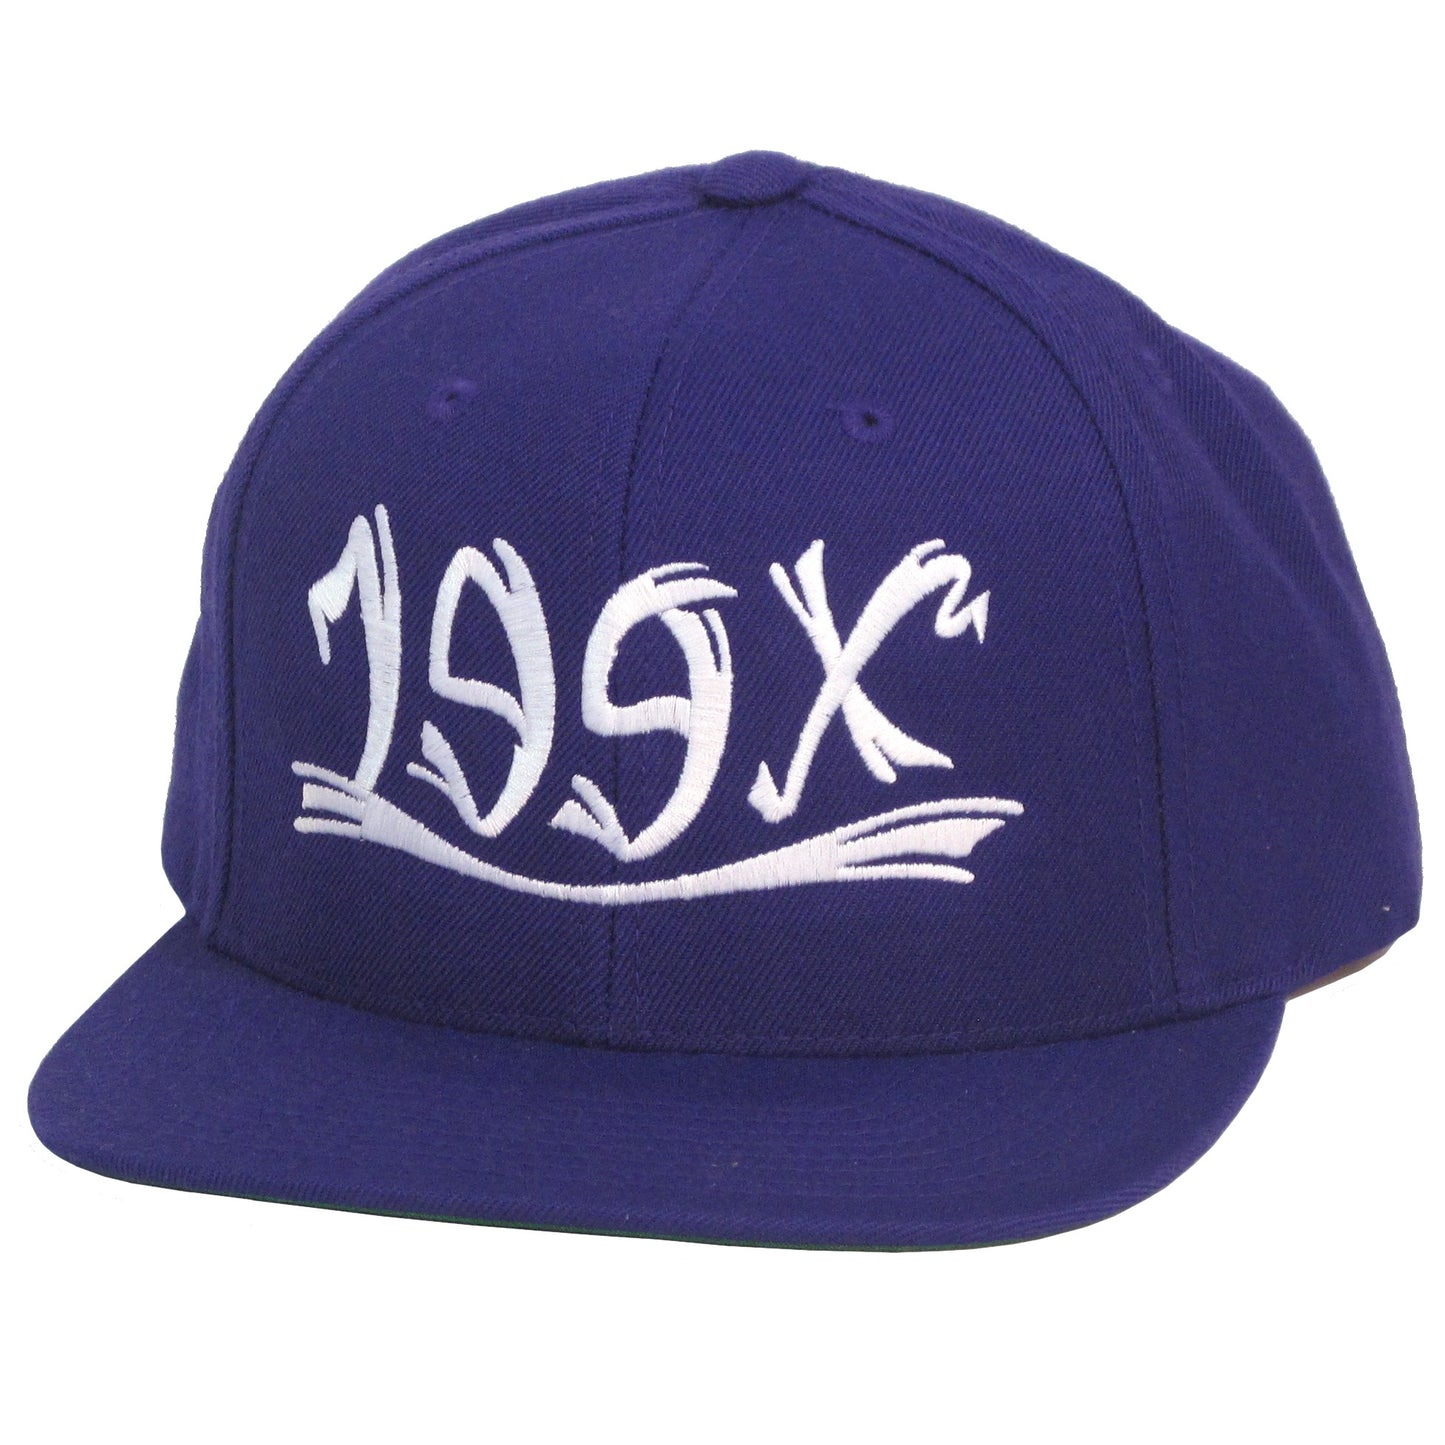 90's Snapback : Purple